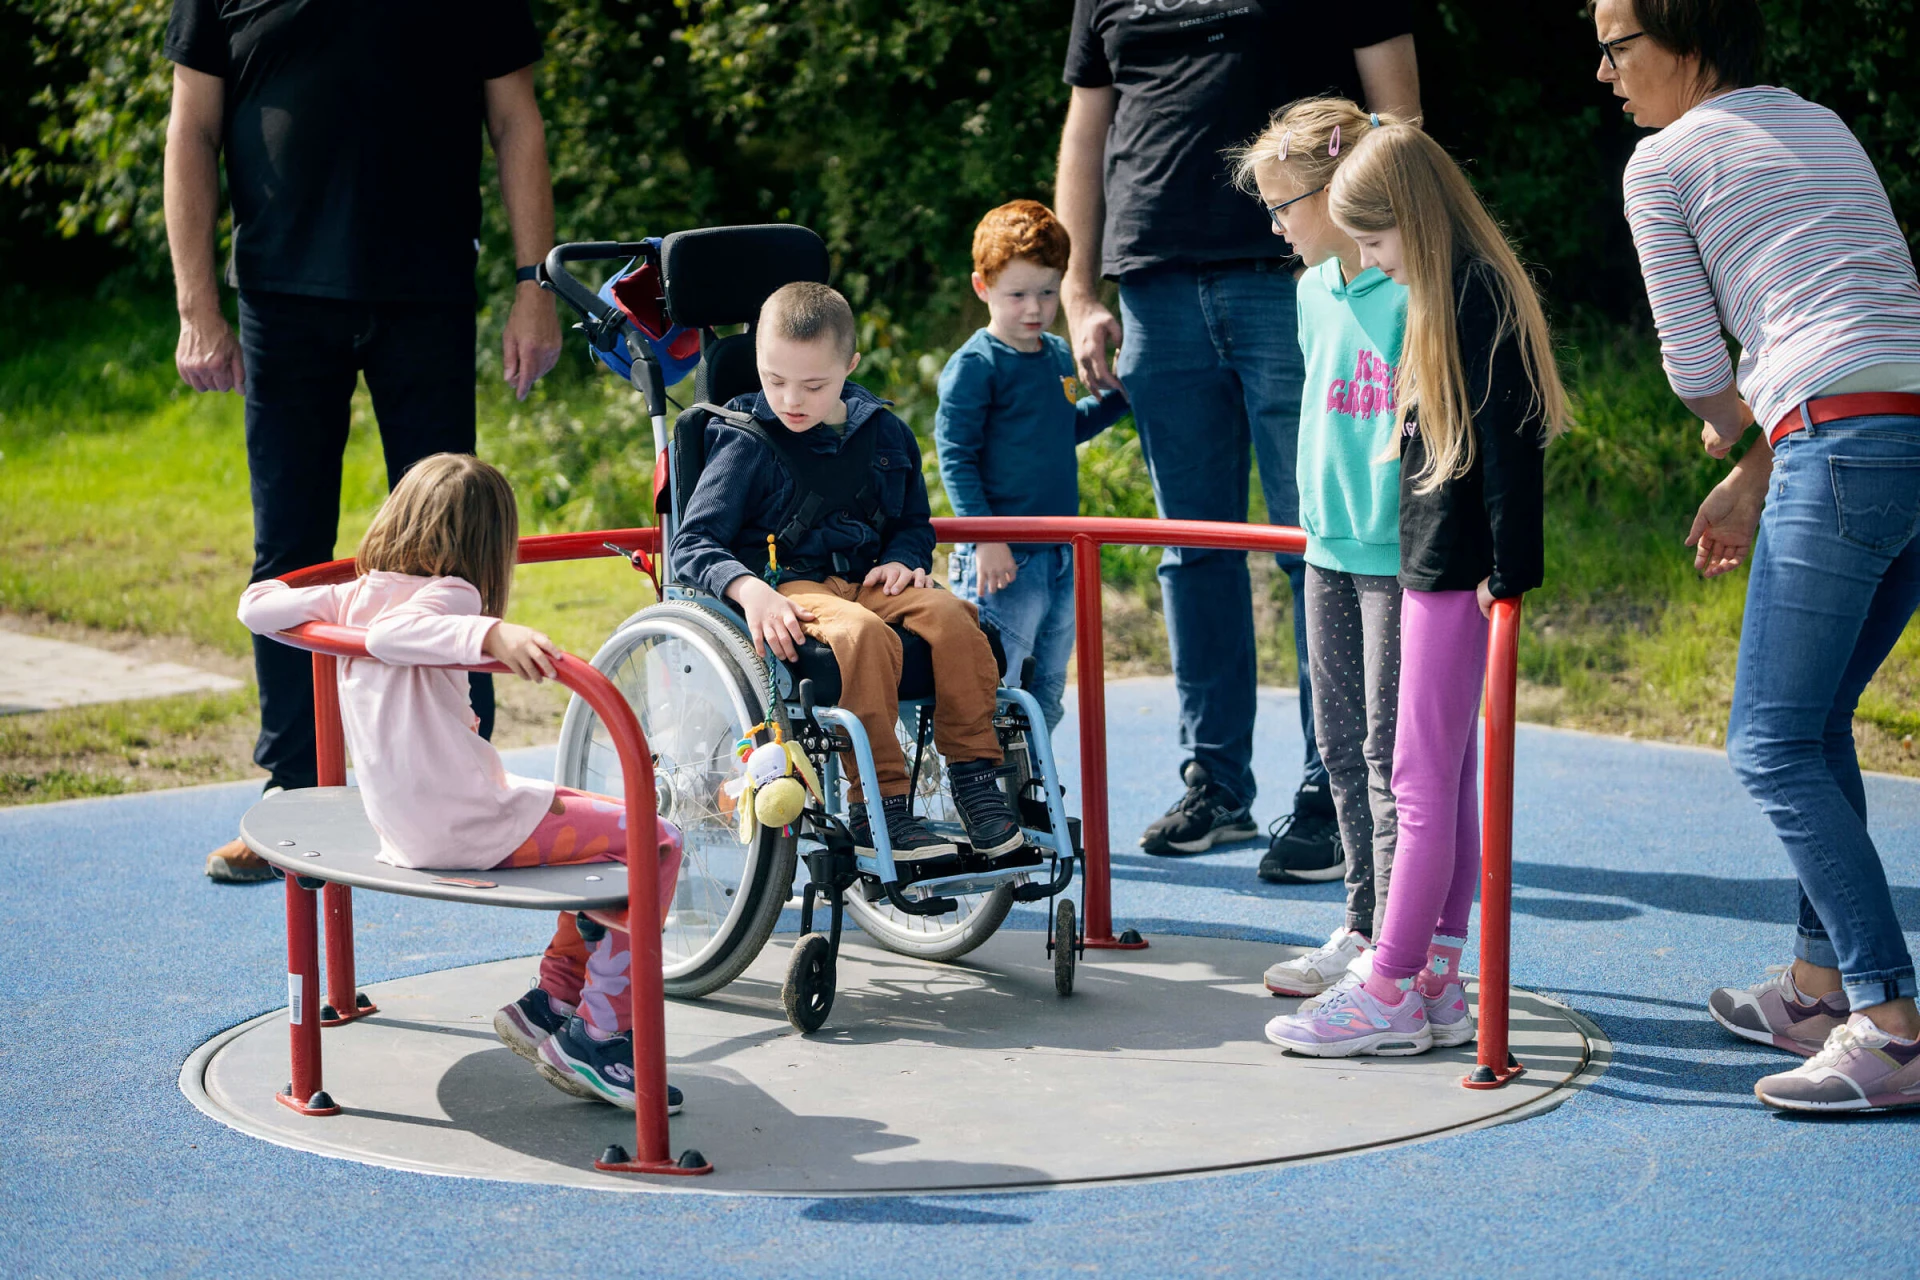 Bambini che giocano su una giostra per sedie a rotelle in un parco giochi